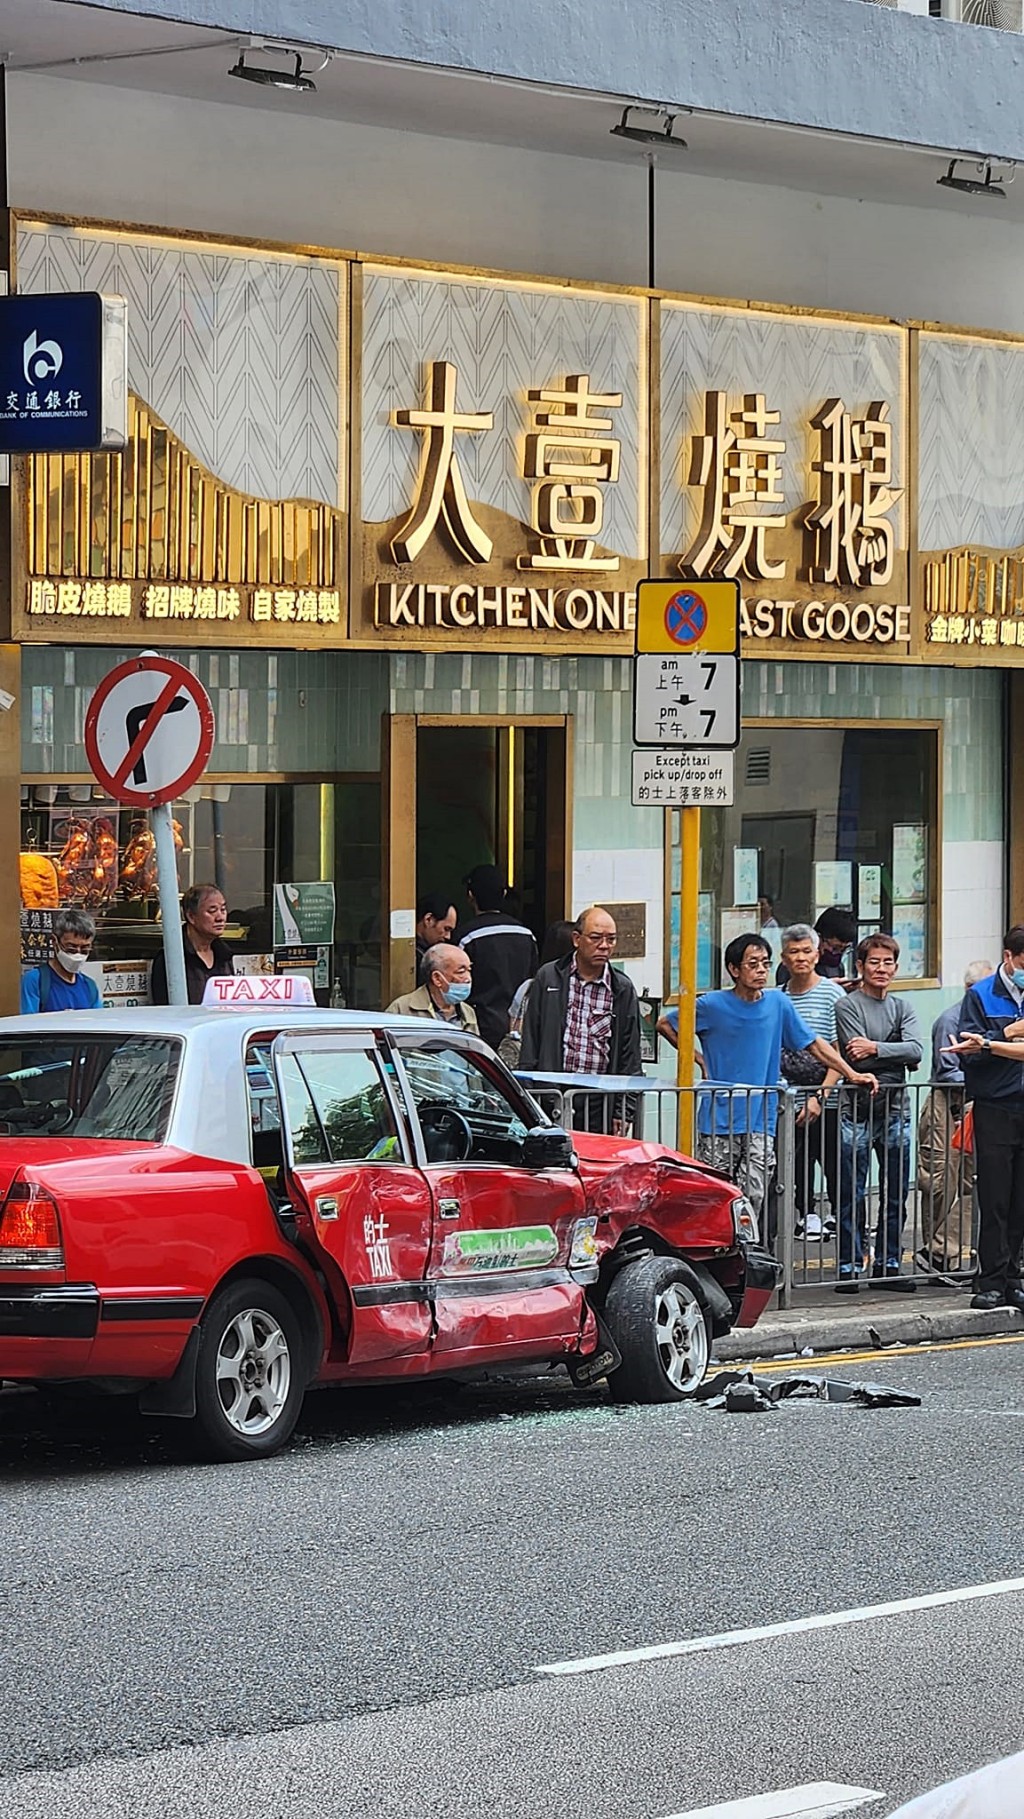 的士右車身凹陷。fb：香港交通突發報料區突發事故資迅谷